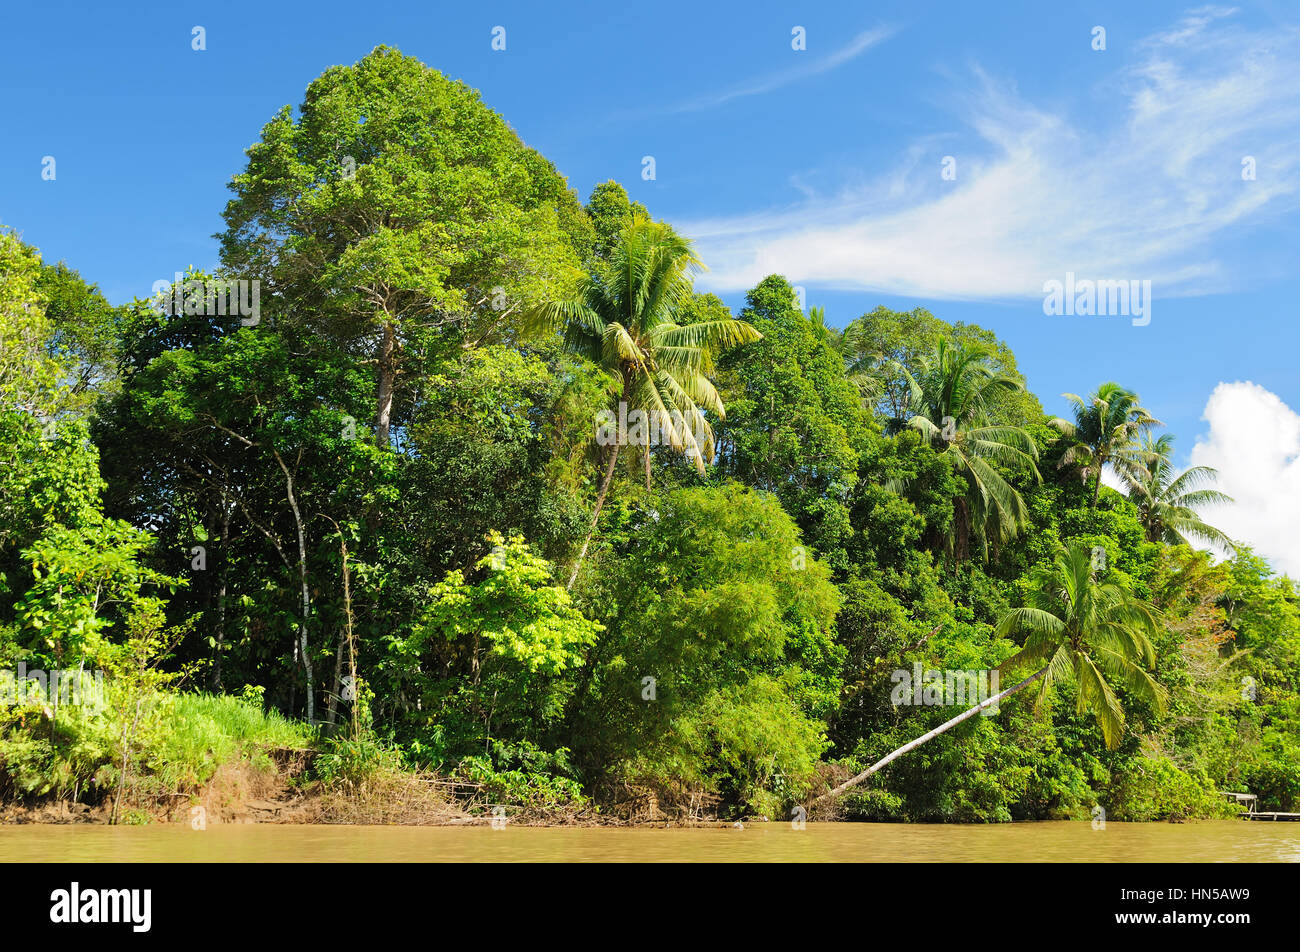 Malerische Aussicht auf den wilden tropischen Dschungel am Fluss Kayan, Ost-Kalimantan, Indonesien-Borneo. Stockfoto